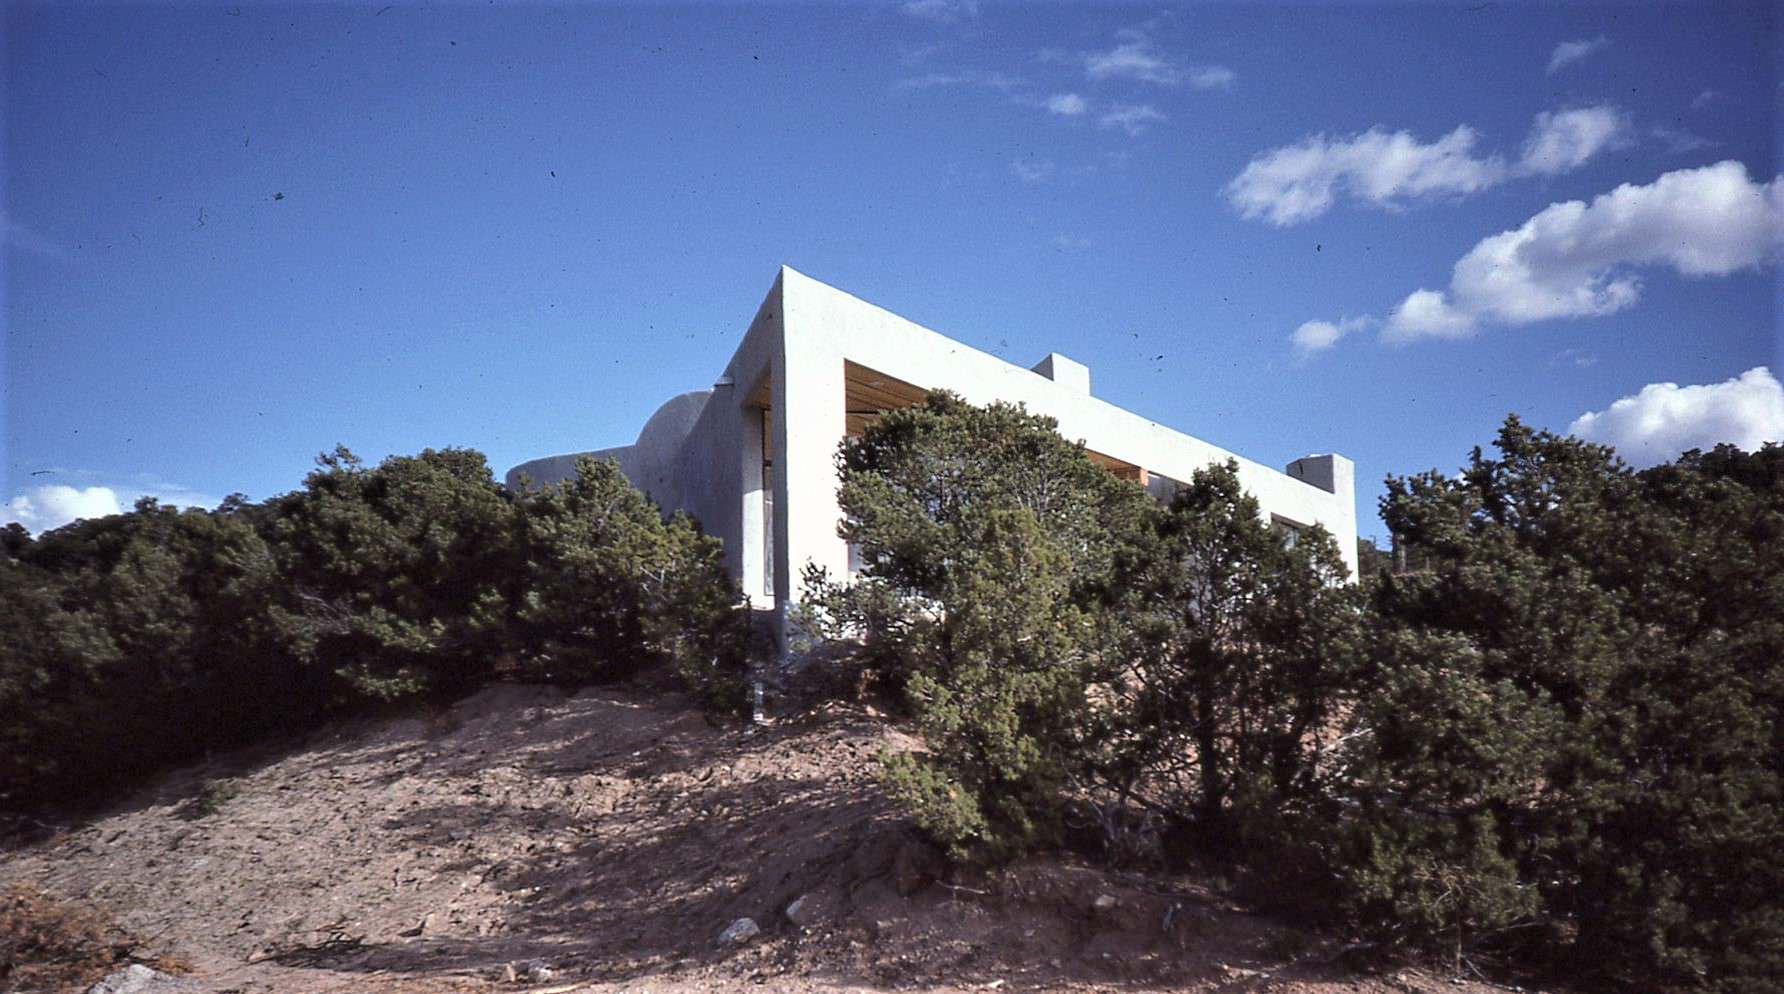 Dove House, Santa Fe, NM